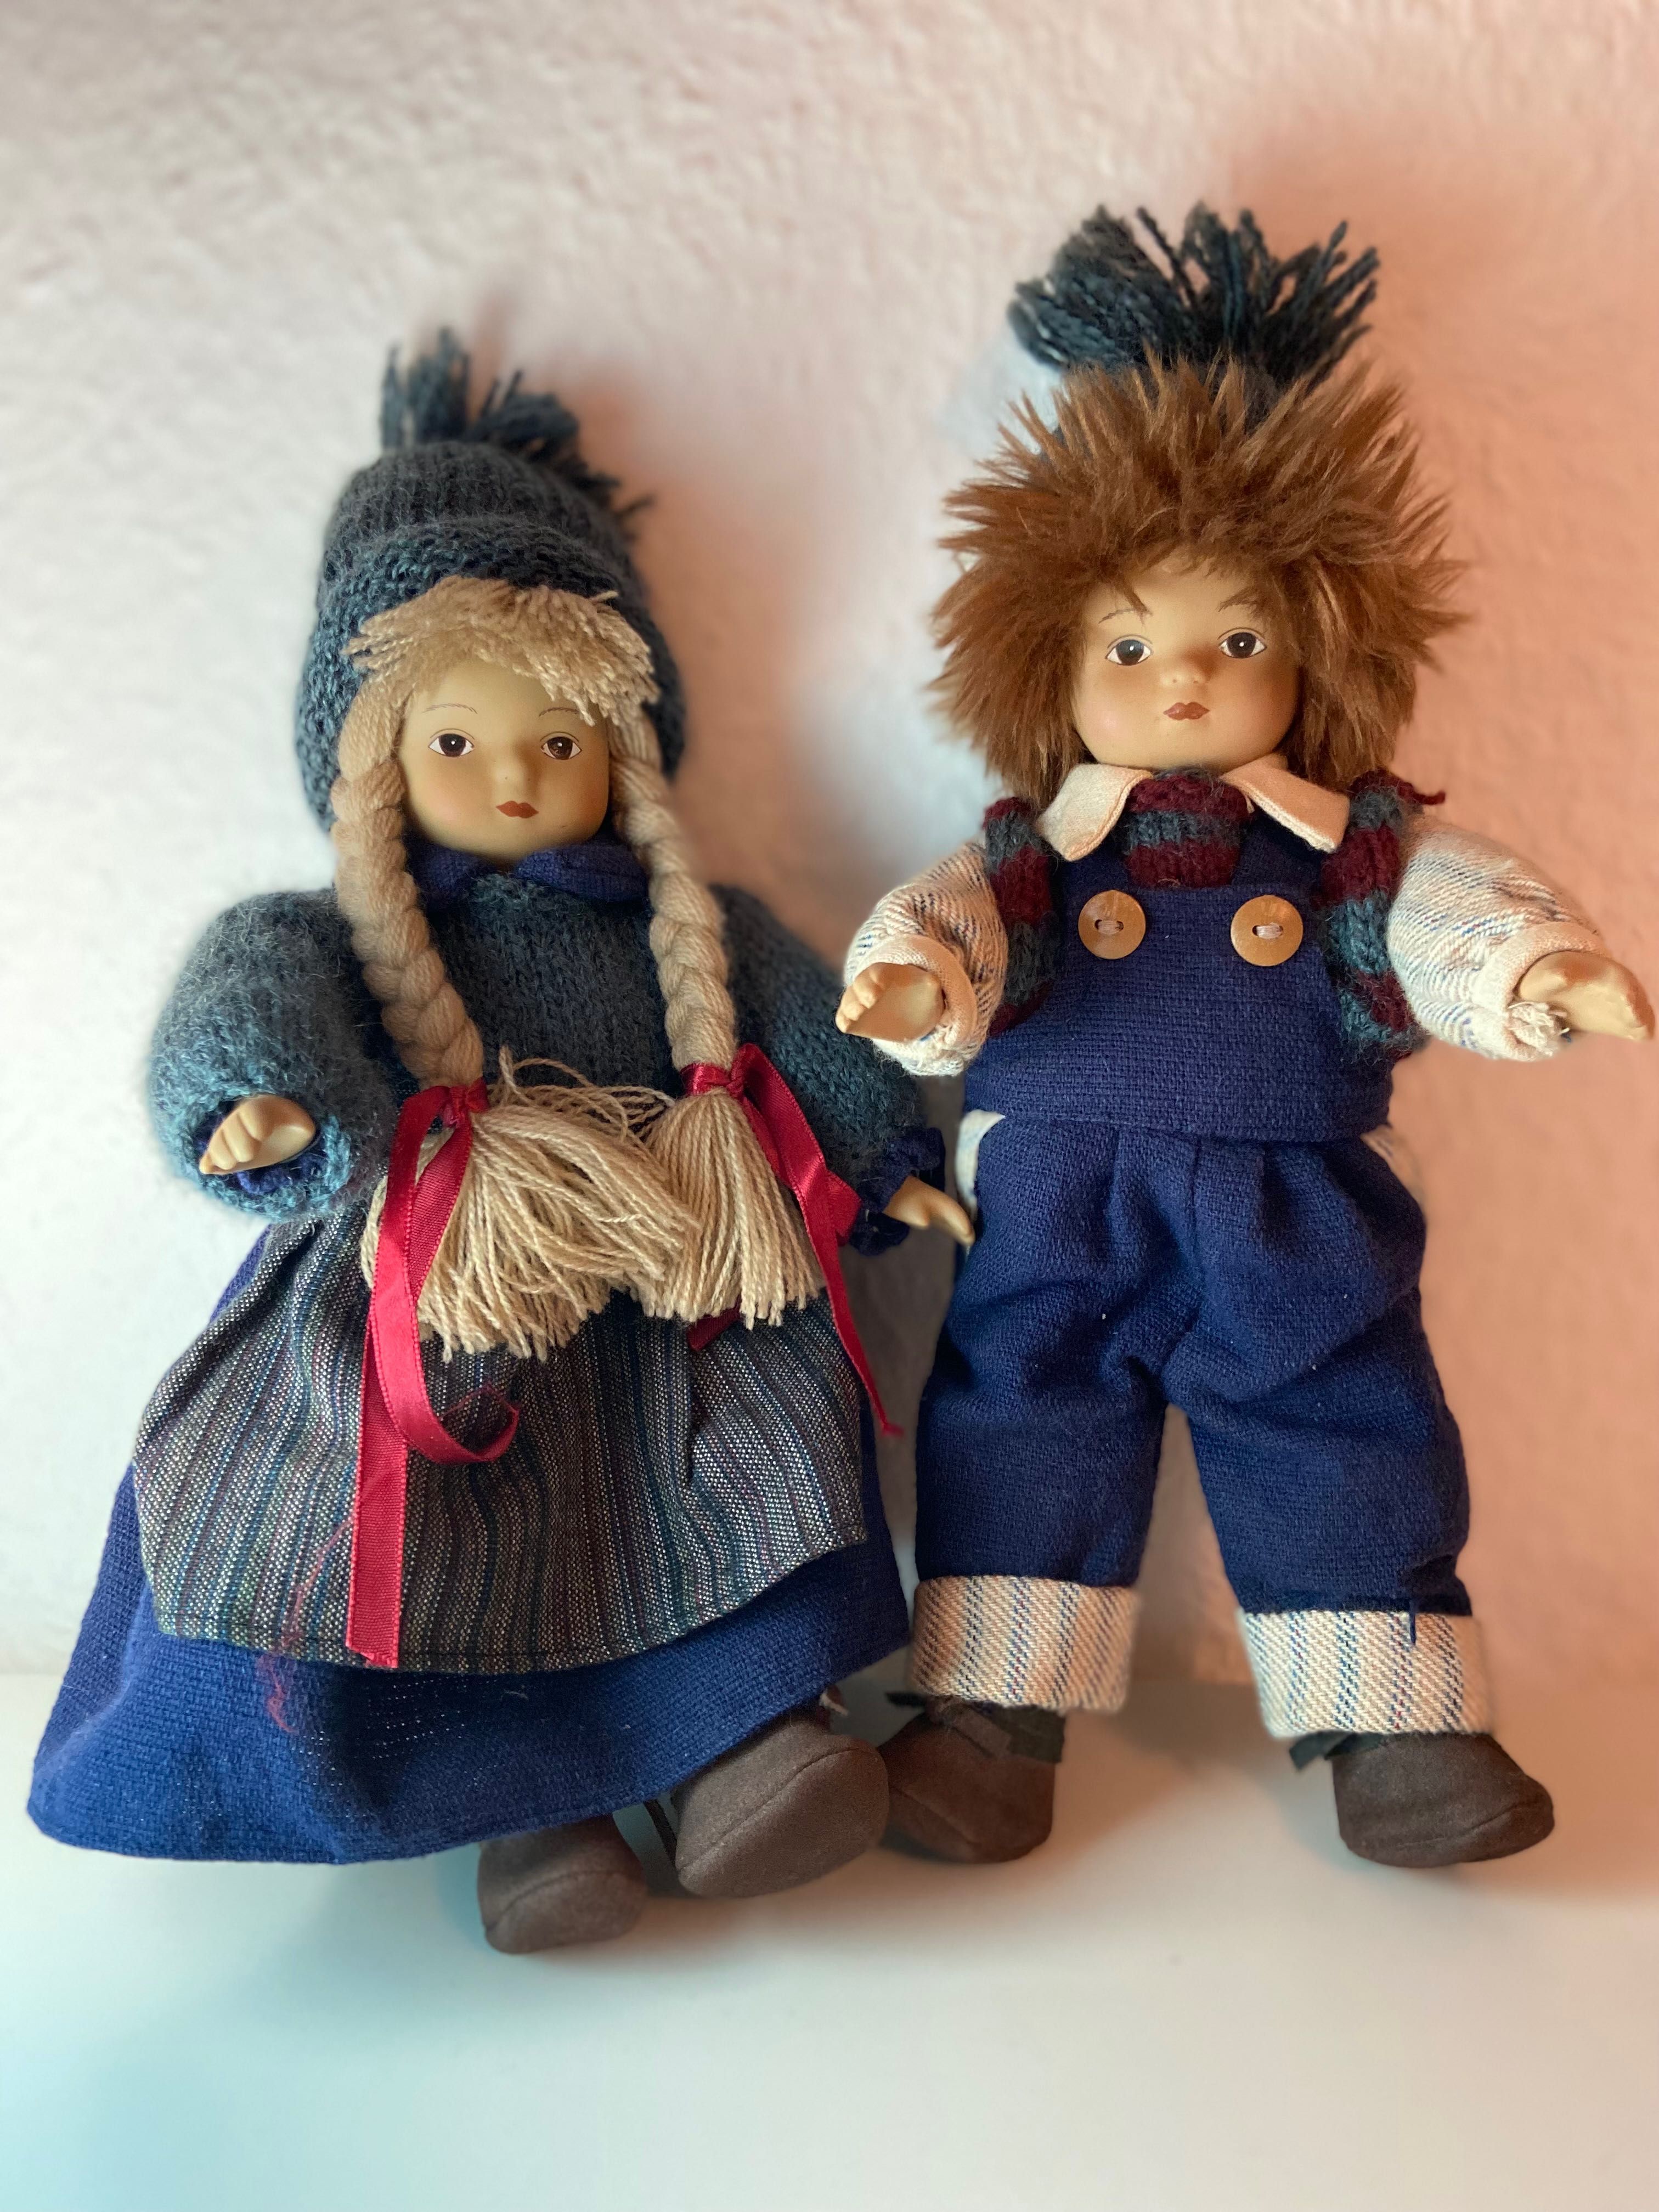 Куклы коллекционные  Германия, фарфоровые